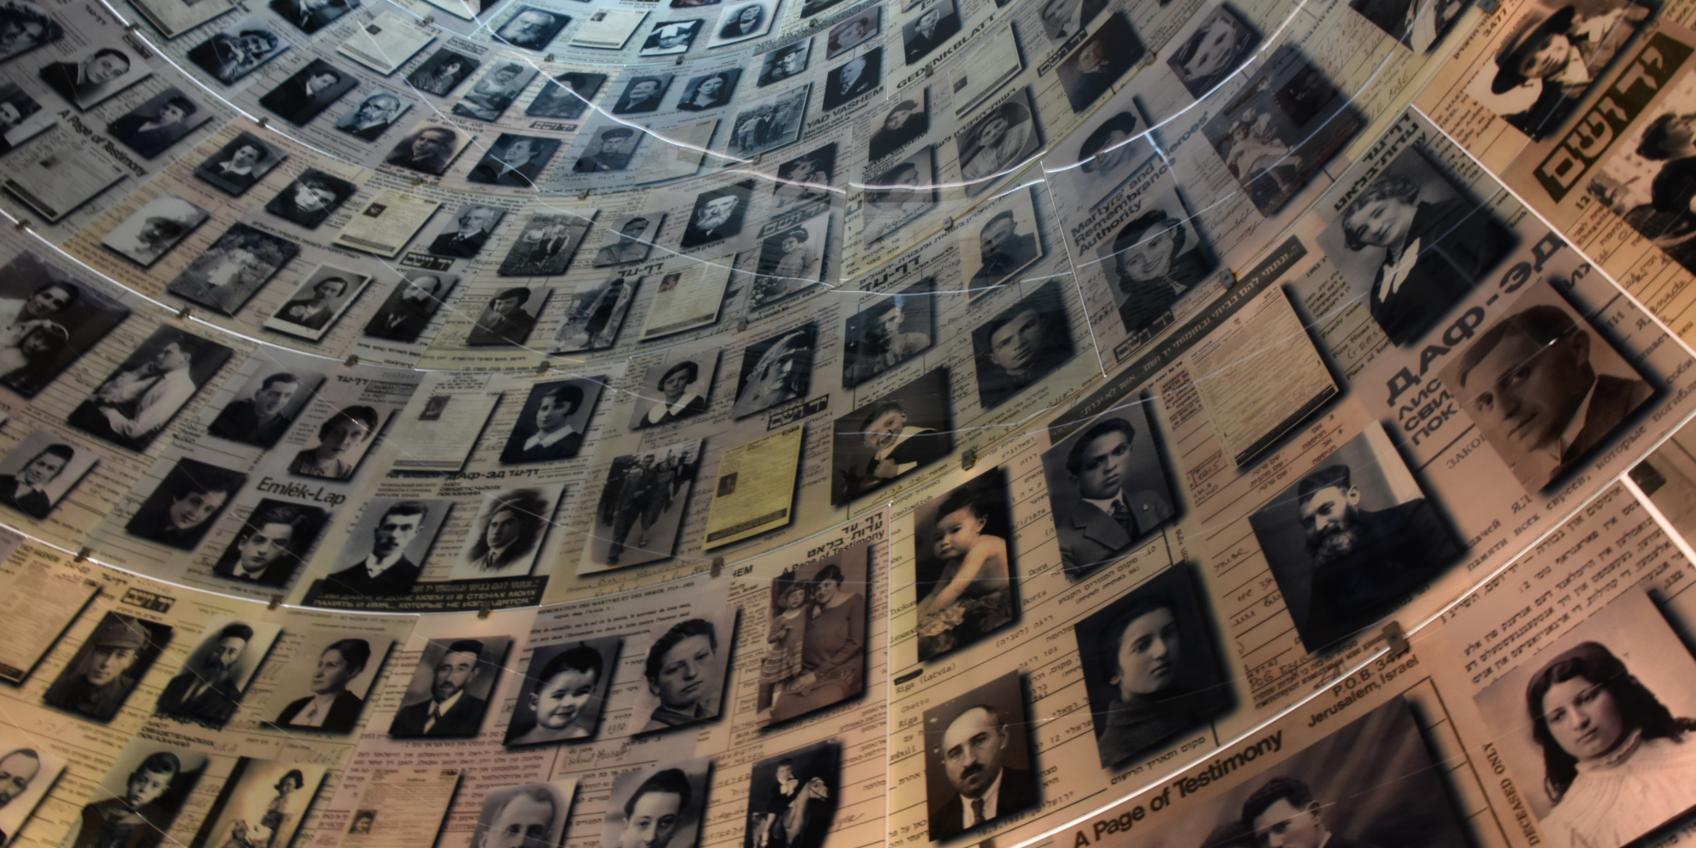 Holocaust-Gedenkstätte Yad Vashem, Israel (c) iStock.com/tzahiV